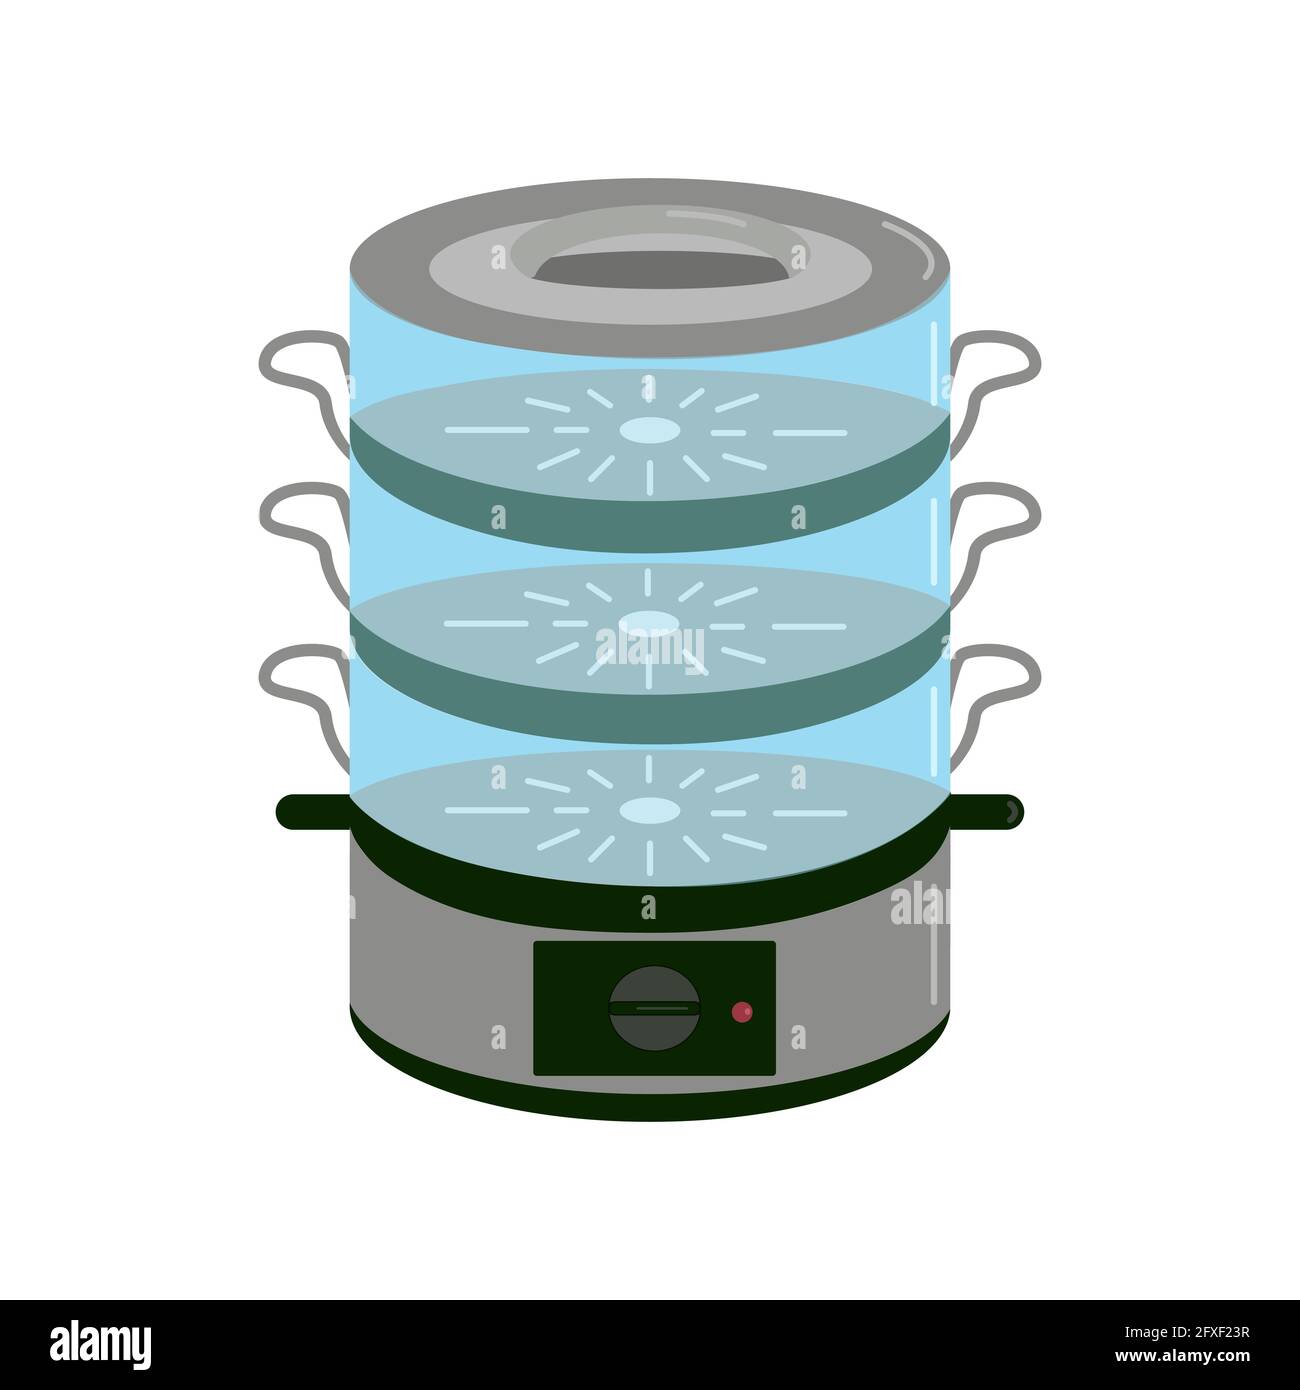 Elektro-Dampfgarer mit schwarzem Kunststoffsockel und transparenten Kunststoffteilen zum Kochen, Elektro-Küchengerät, Vektor-Cliparts im Cartoon-Stil Stock Vektor